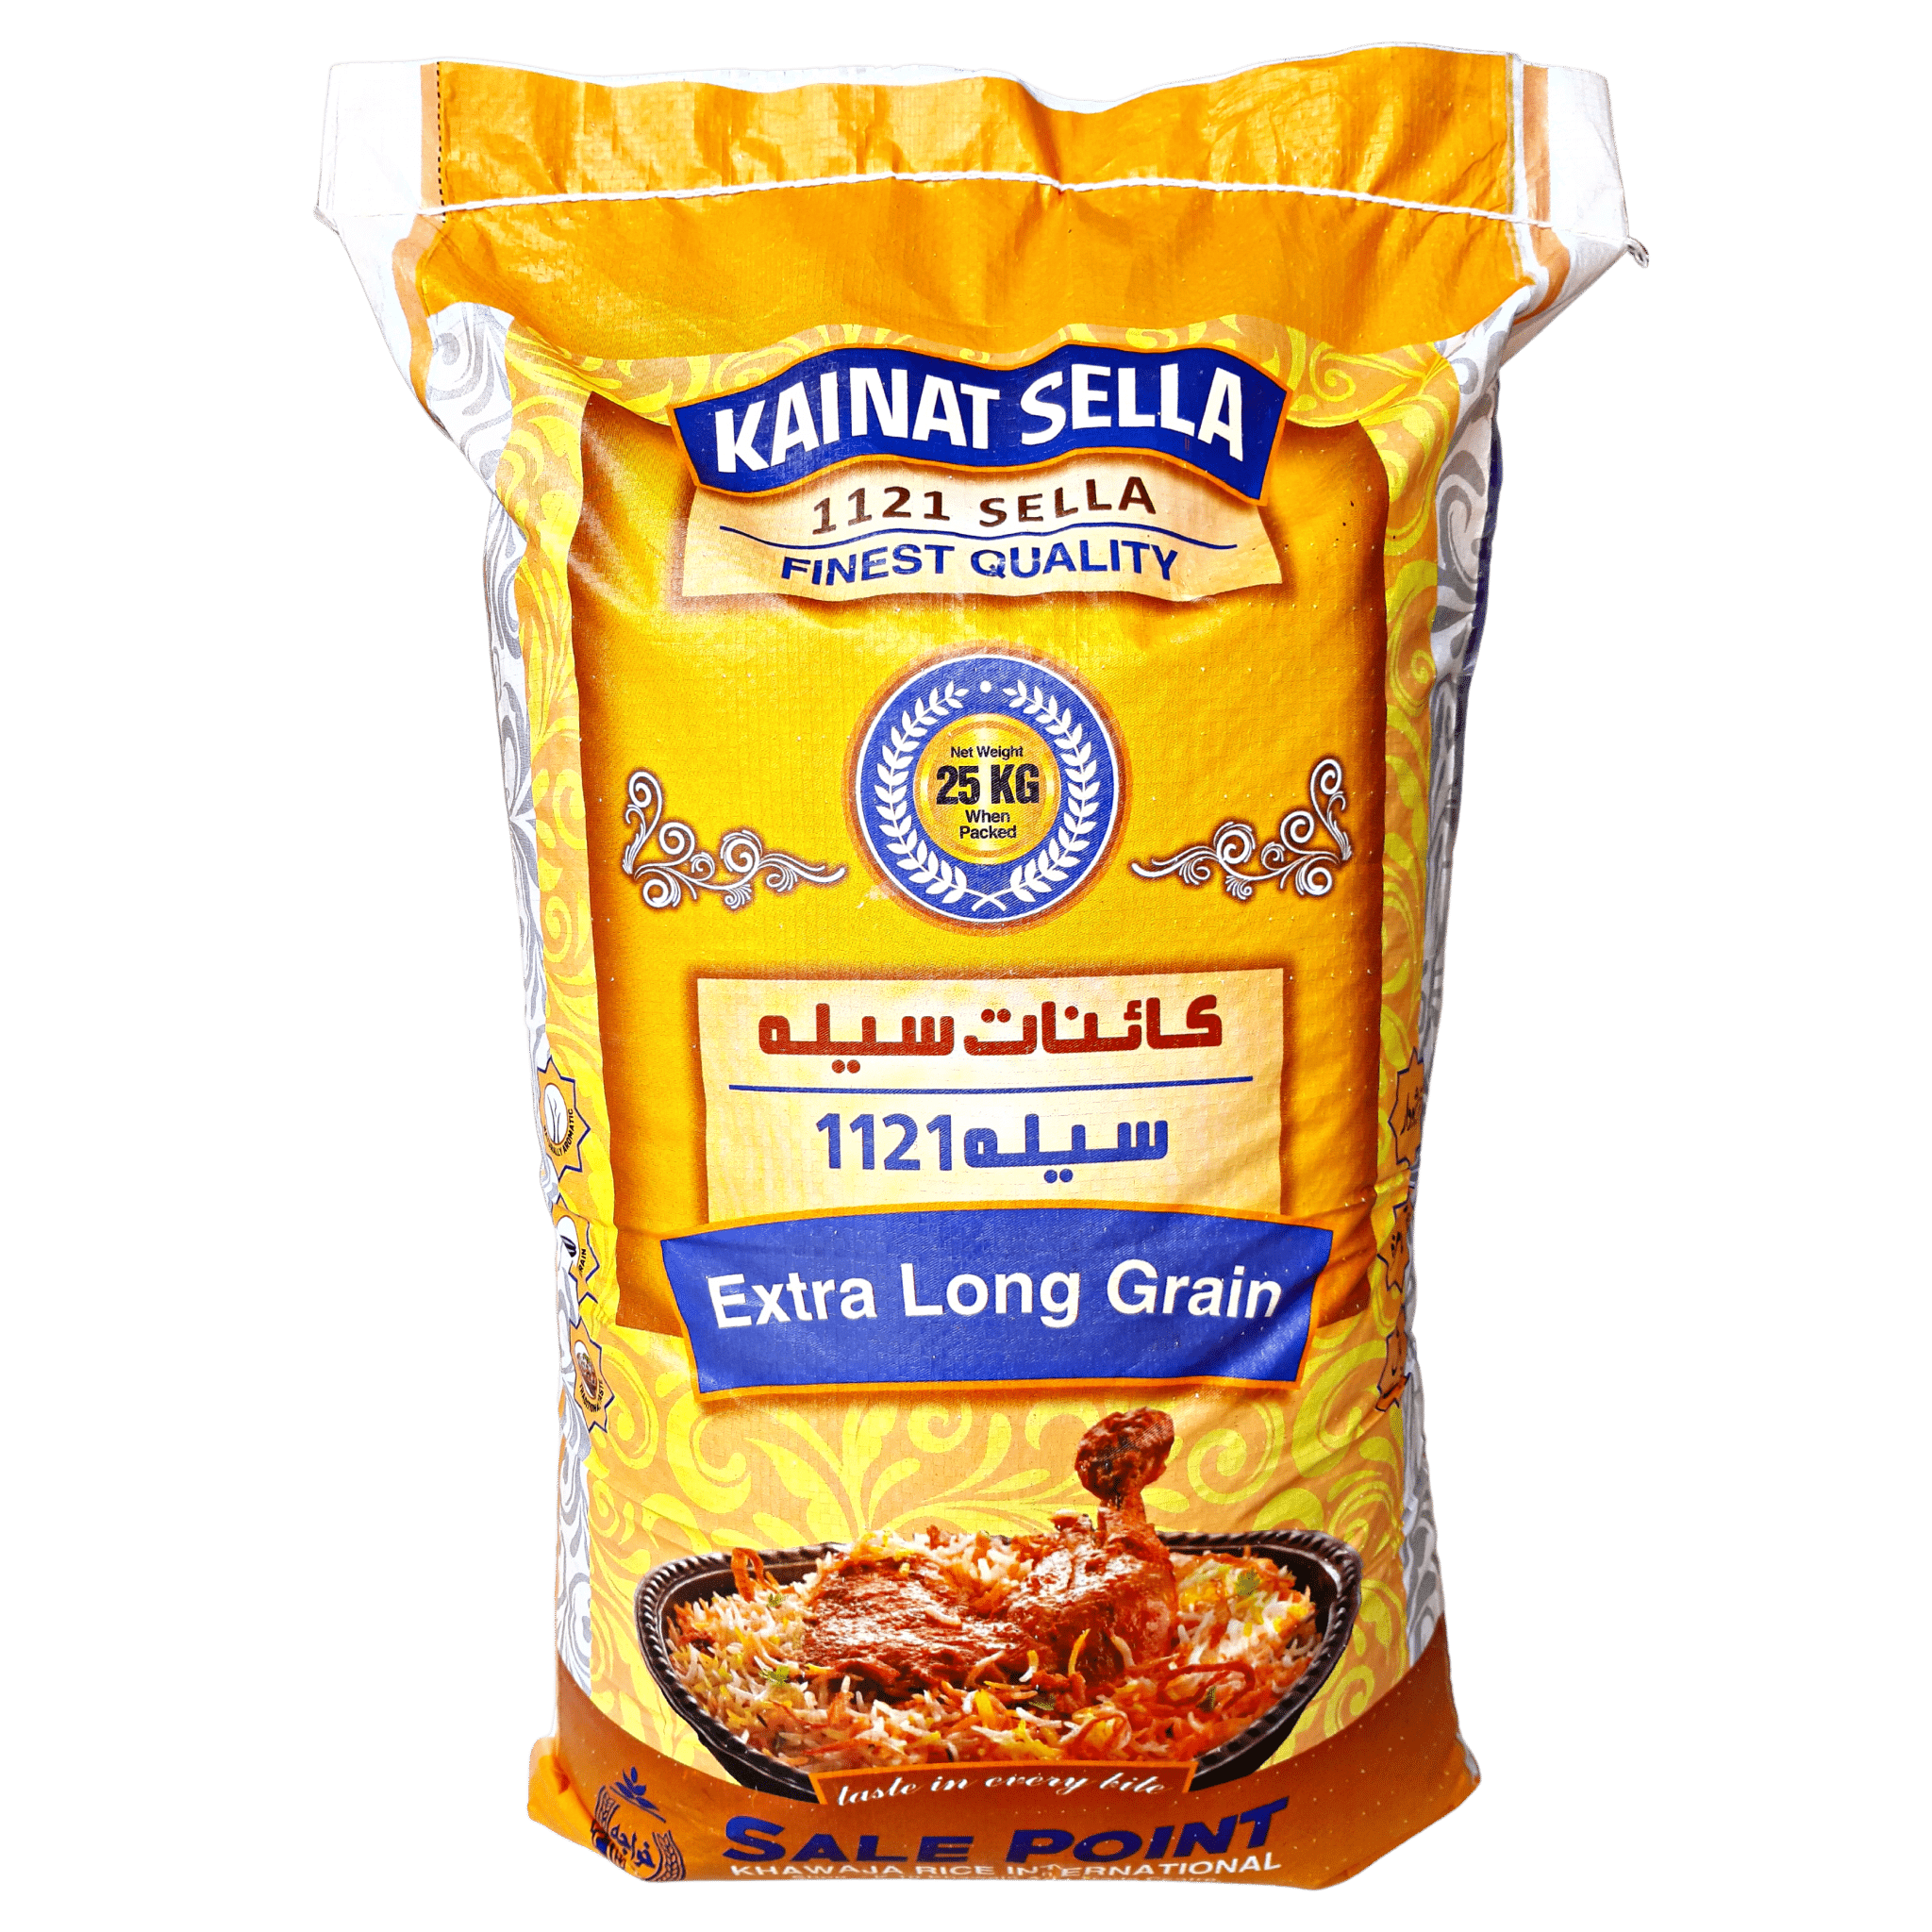 Kainat Sella (1121 Sella) - Khawaja Rice InternationalKhawaja Rice InternationalKhawaja Rice InternationalKainat Sella (1121 Sella)25 KGKainat Sella (1121 Sella)